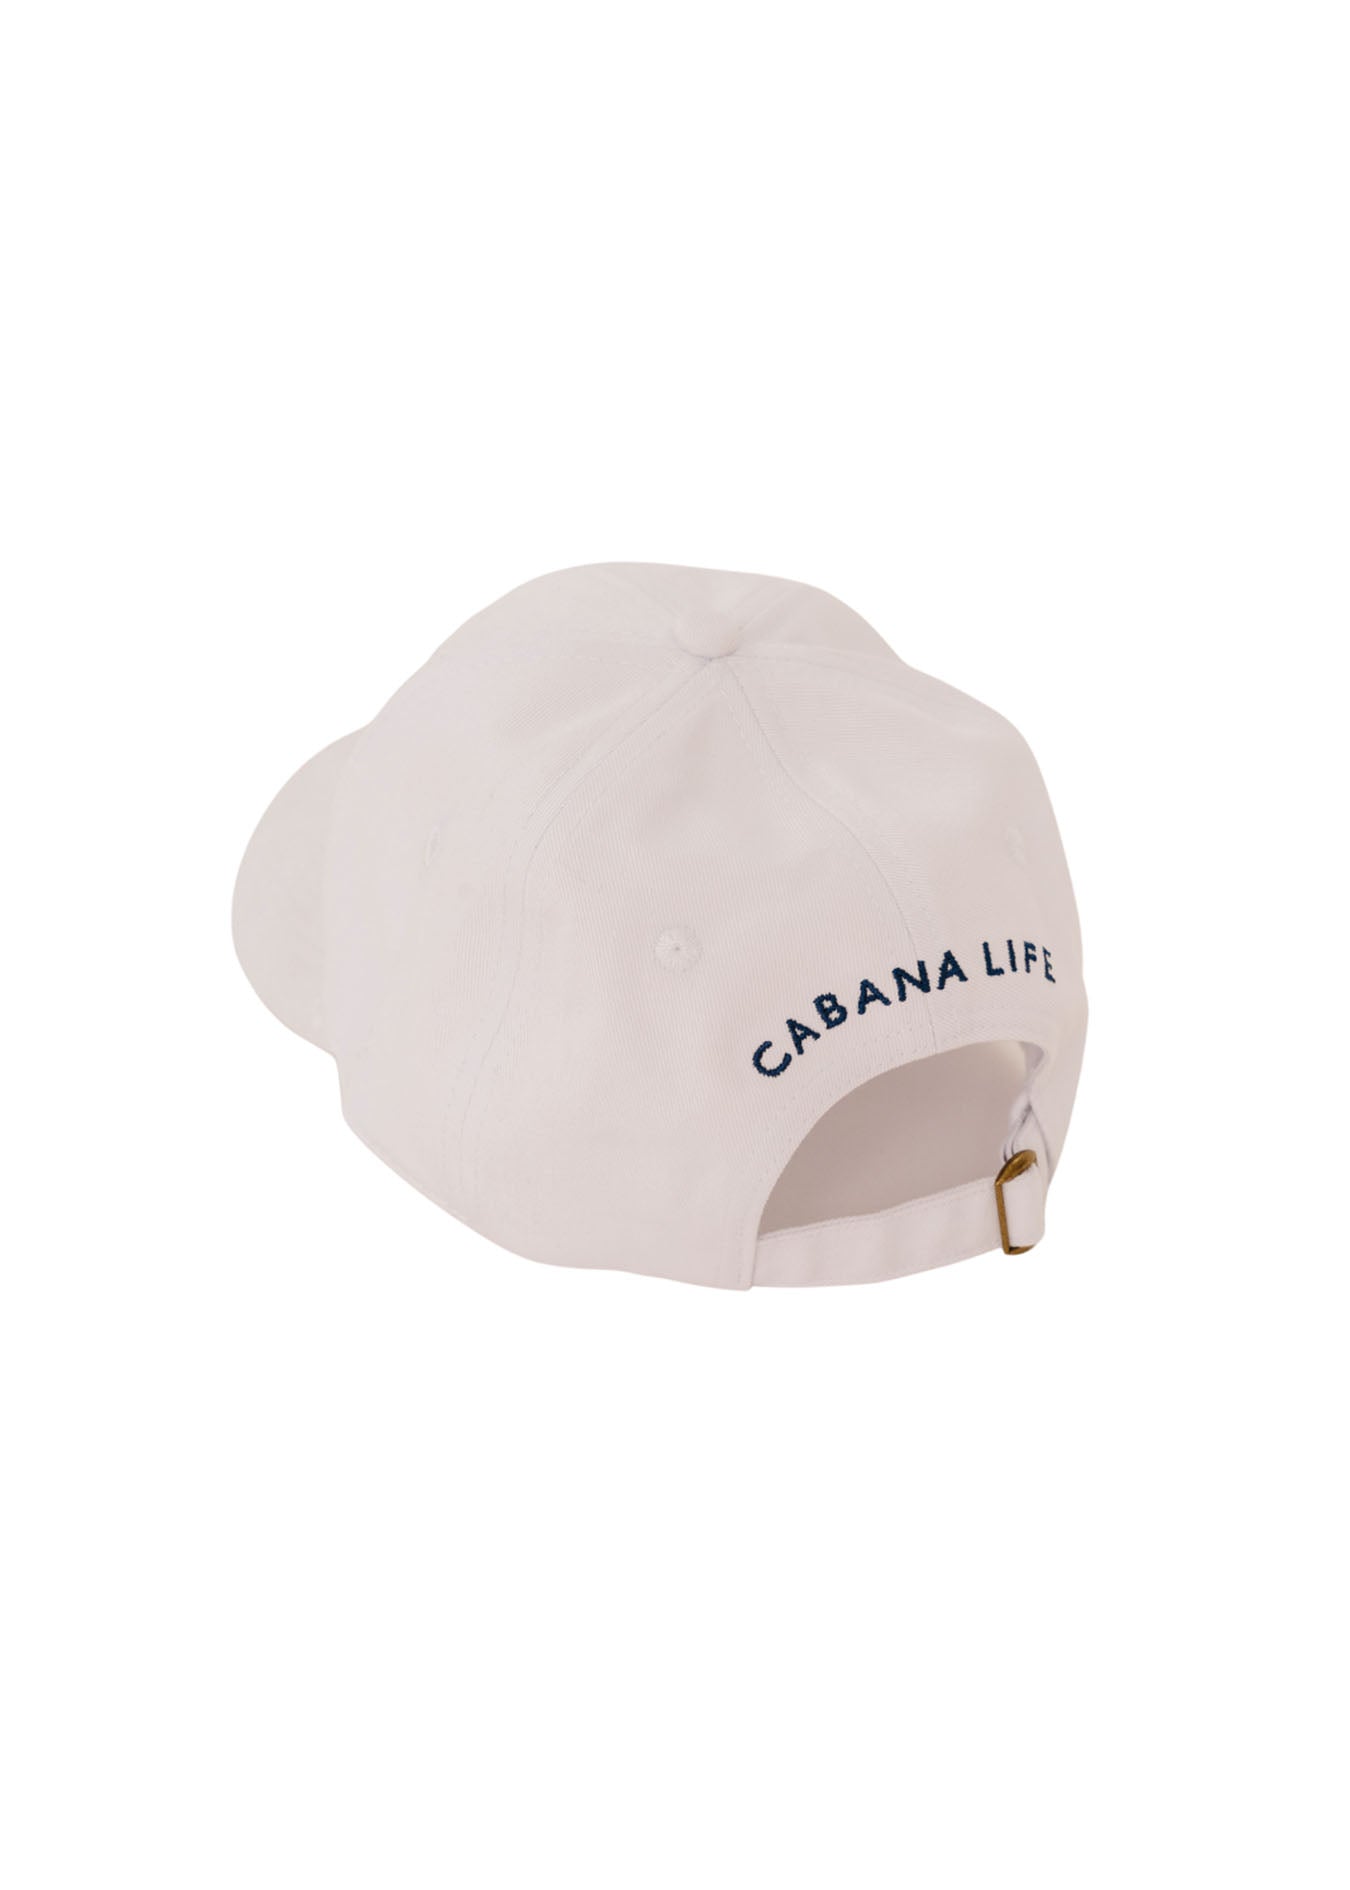 White Cabana Life Baseball Hat on white background